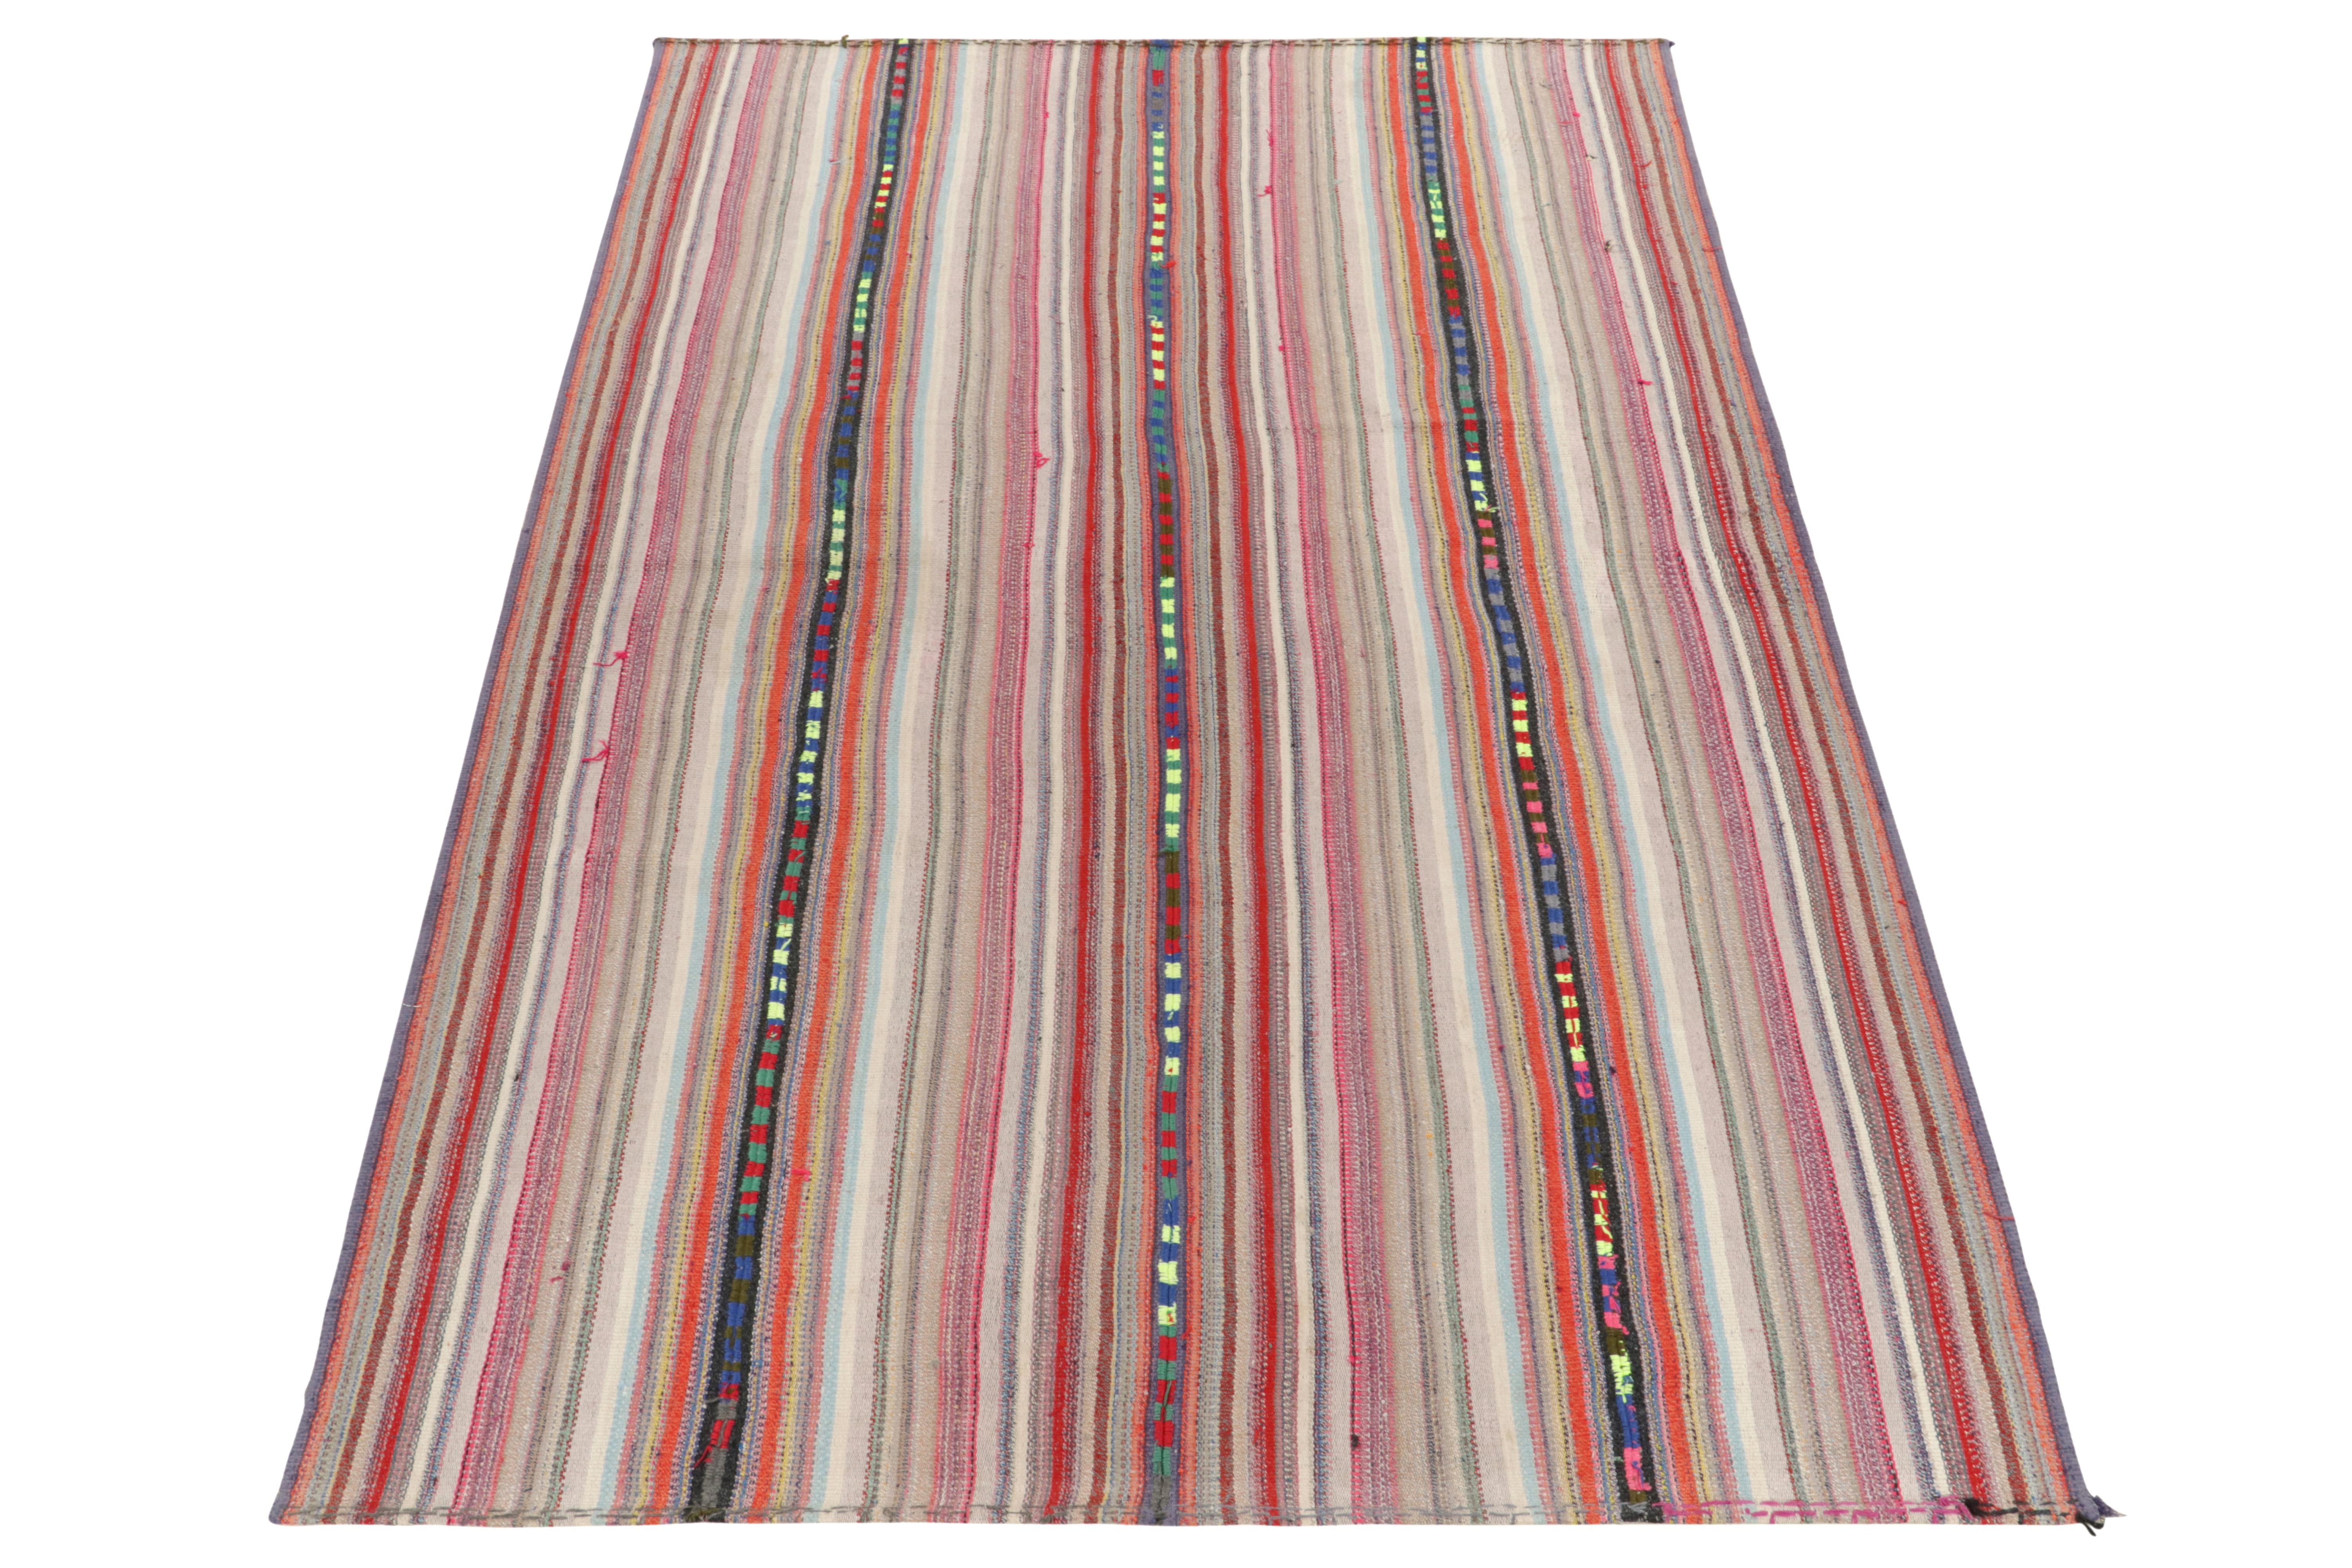 Eine seltene Art von Chaput-Kelim-Teppich aus der Türkei (ca. 1950-1960), der jetzt in unser Antiquitäten- und Vintage-Sortiment aufgenommen wurde. Das leichte und erfrischende Stück, das sich durch feine Details in den Farben der polychromen